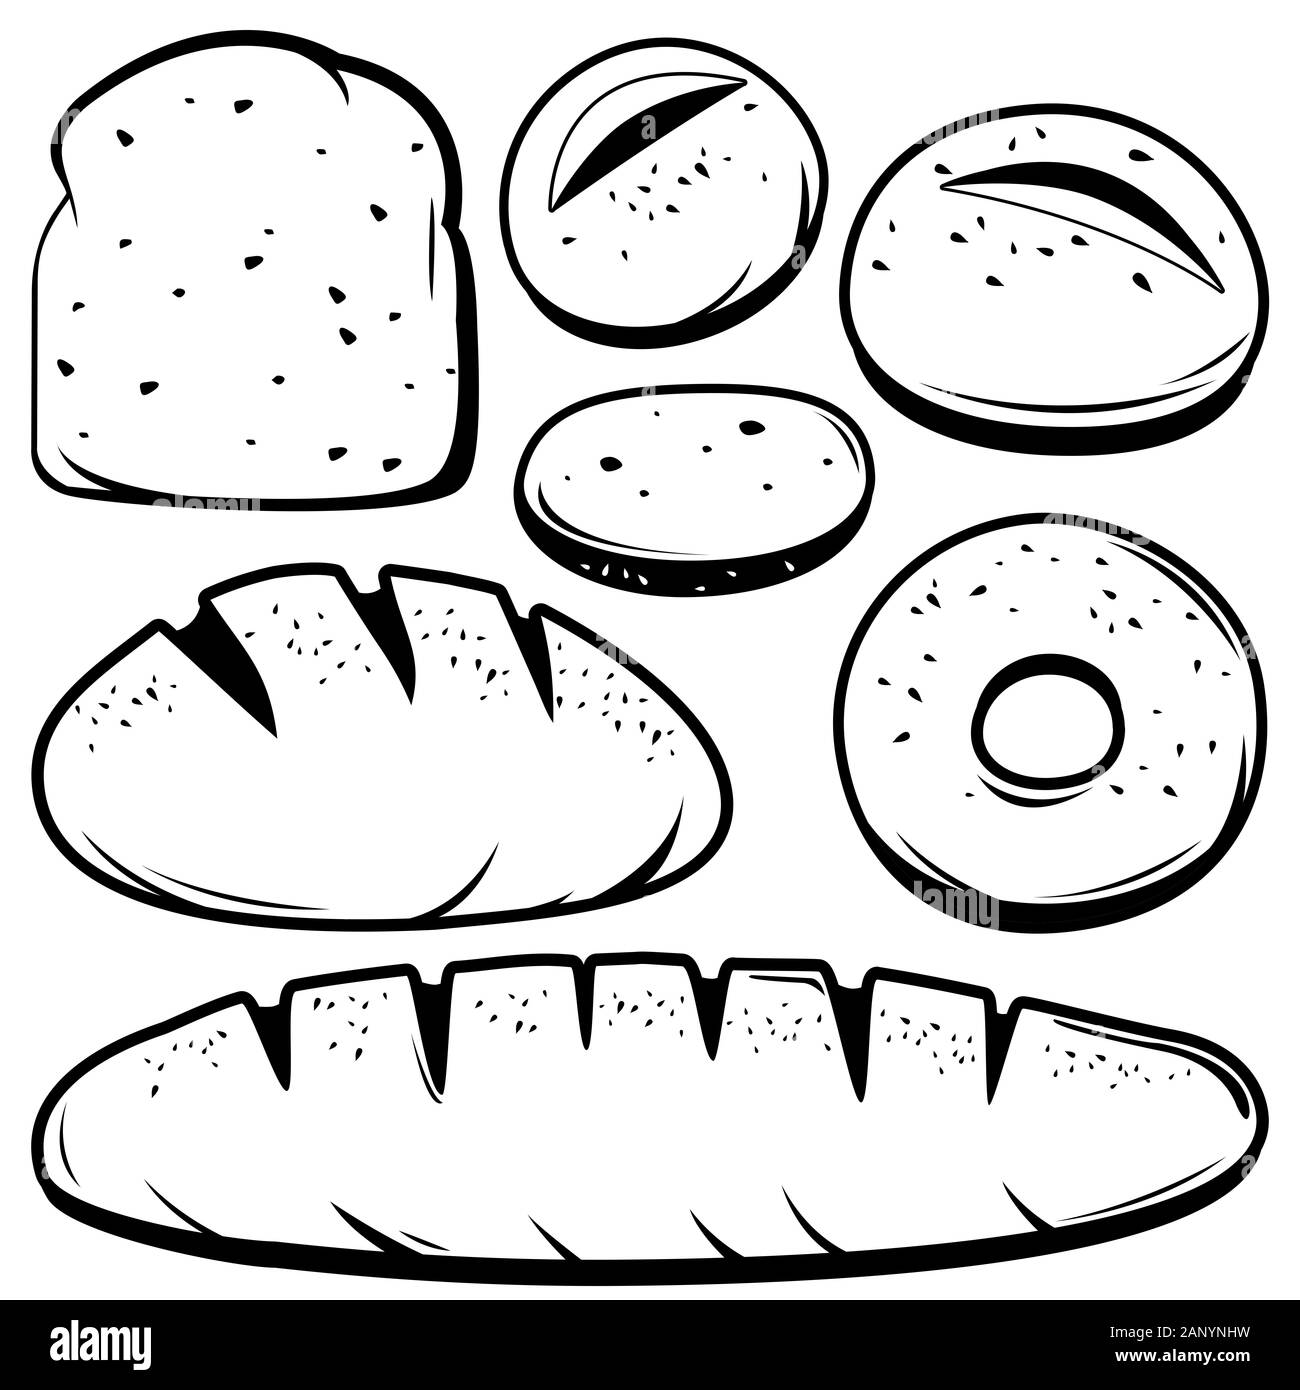 Collection noire et blanche de différents types de pain. Banque D'Images